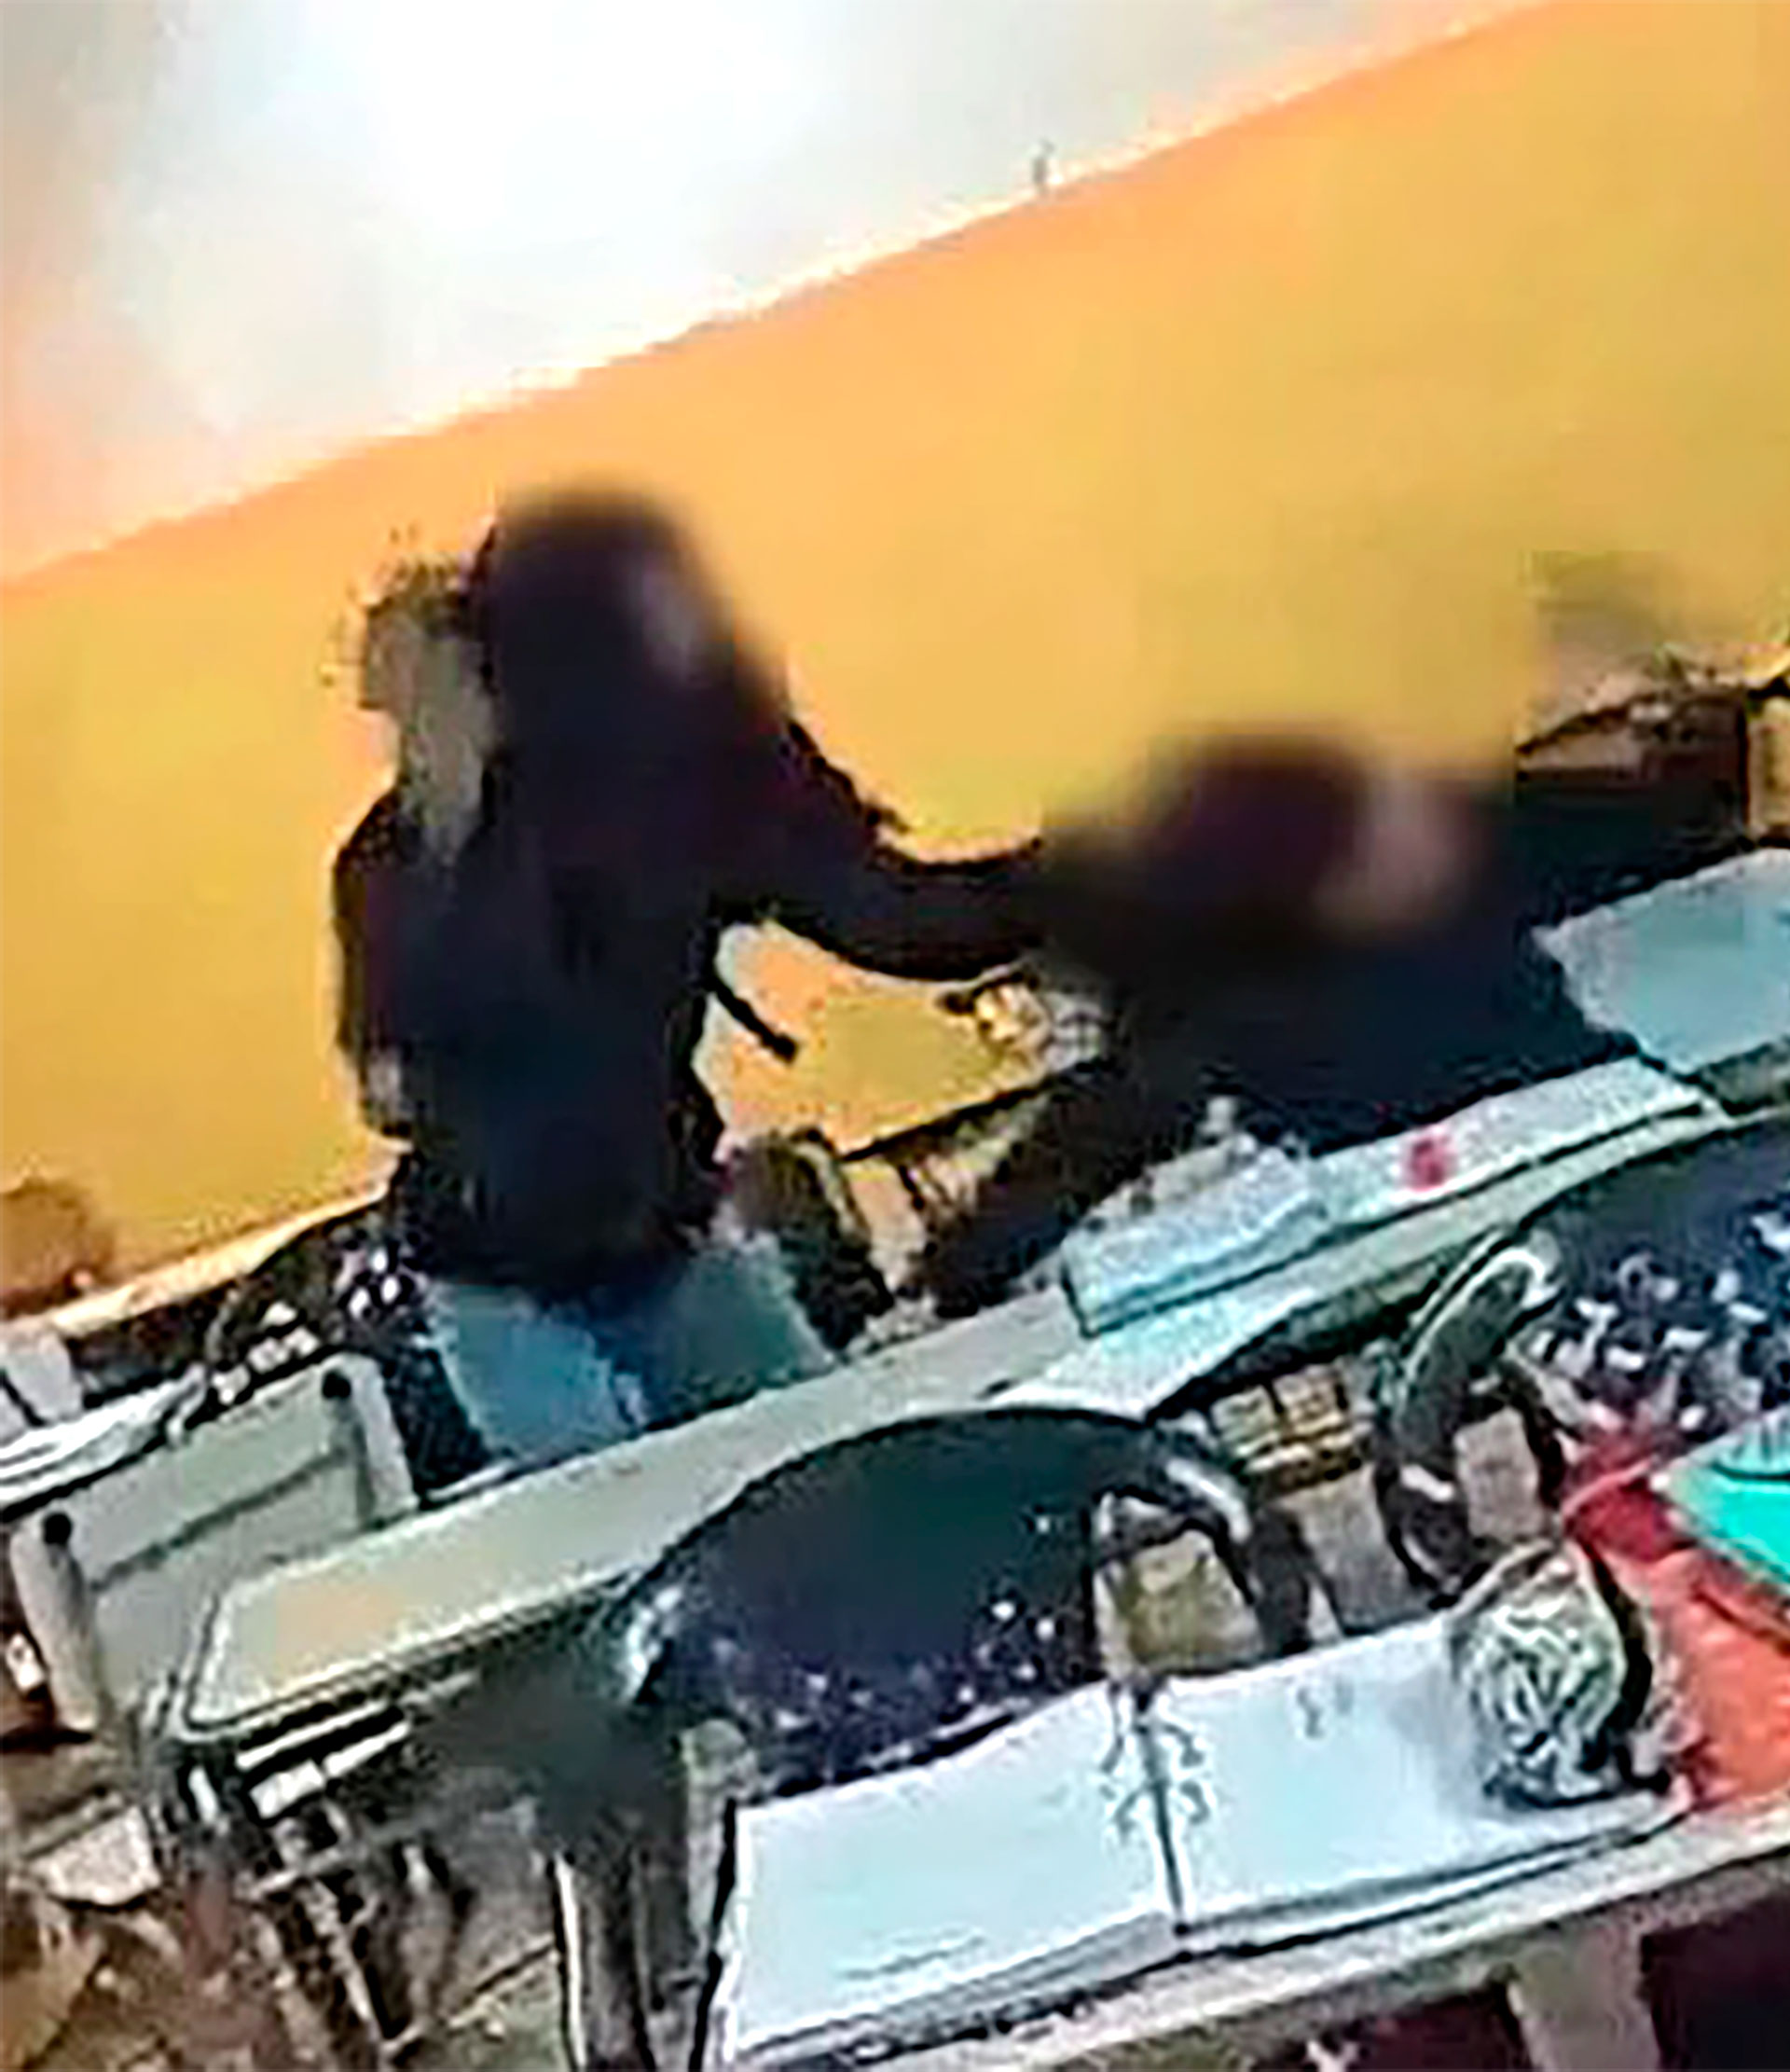 La agresoras admitieron que golpearon a la alumna "por cheta, linda y tener el pelo limpio"